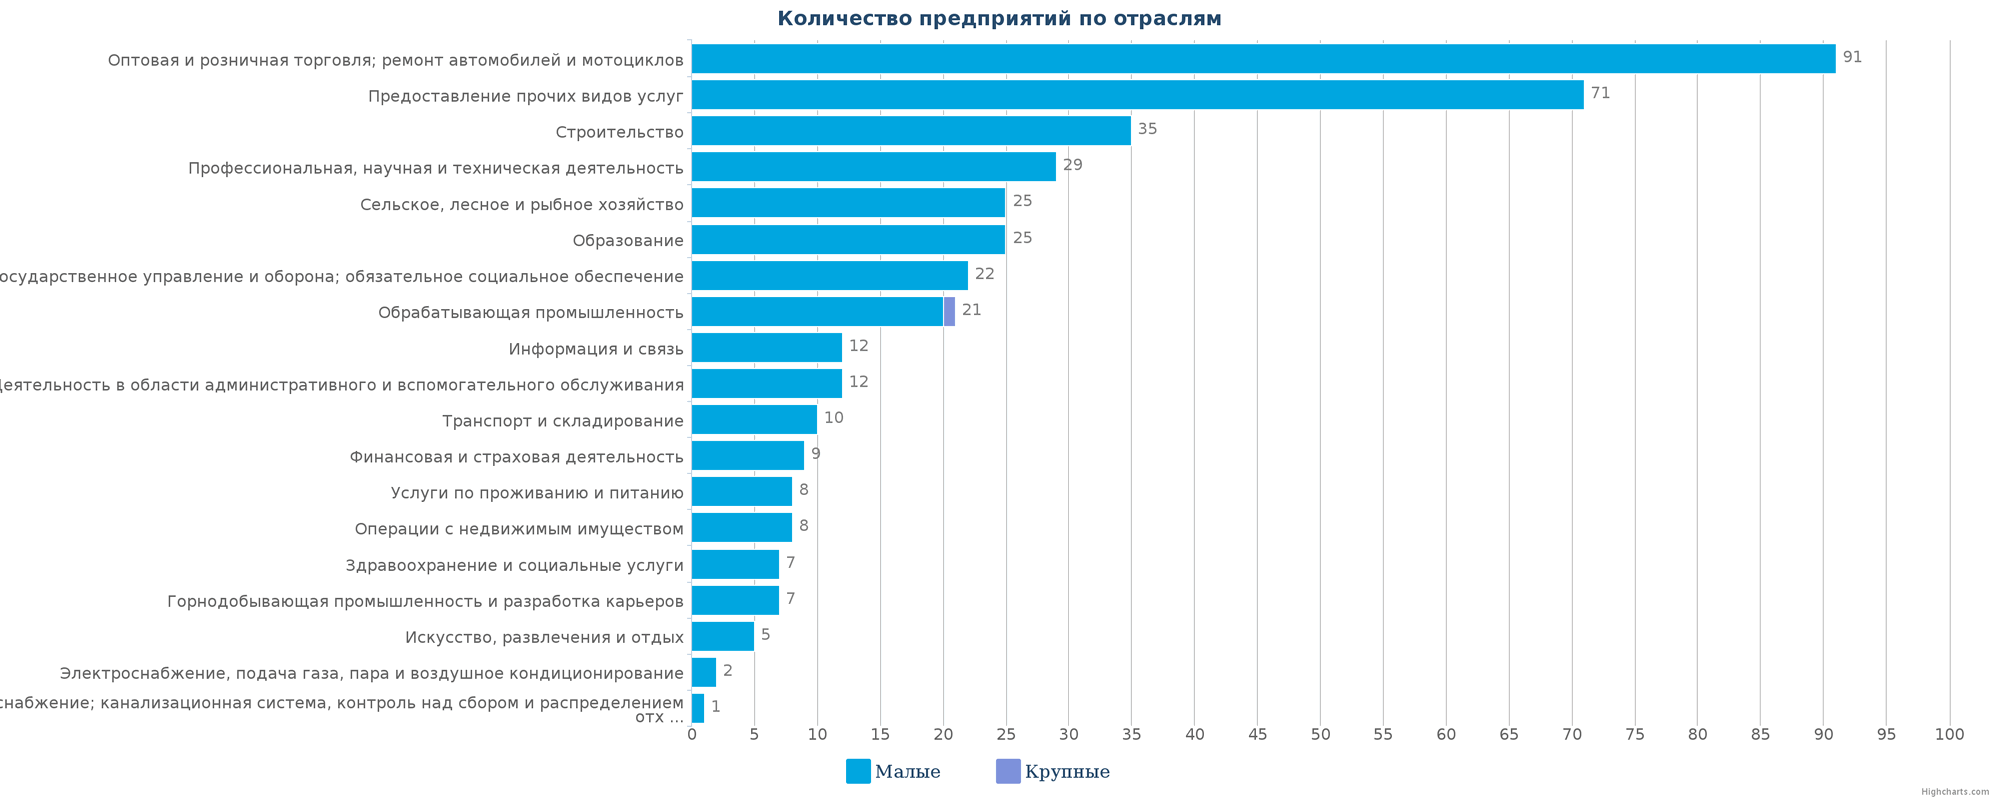 Новые предприятия в едином реестре Казахстана